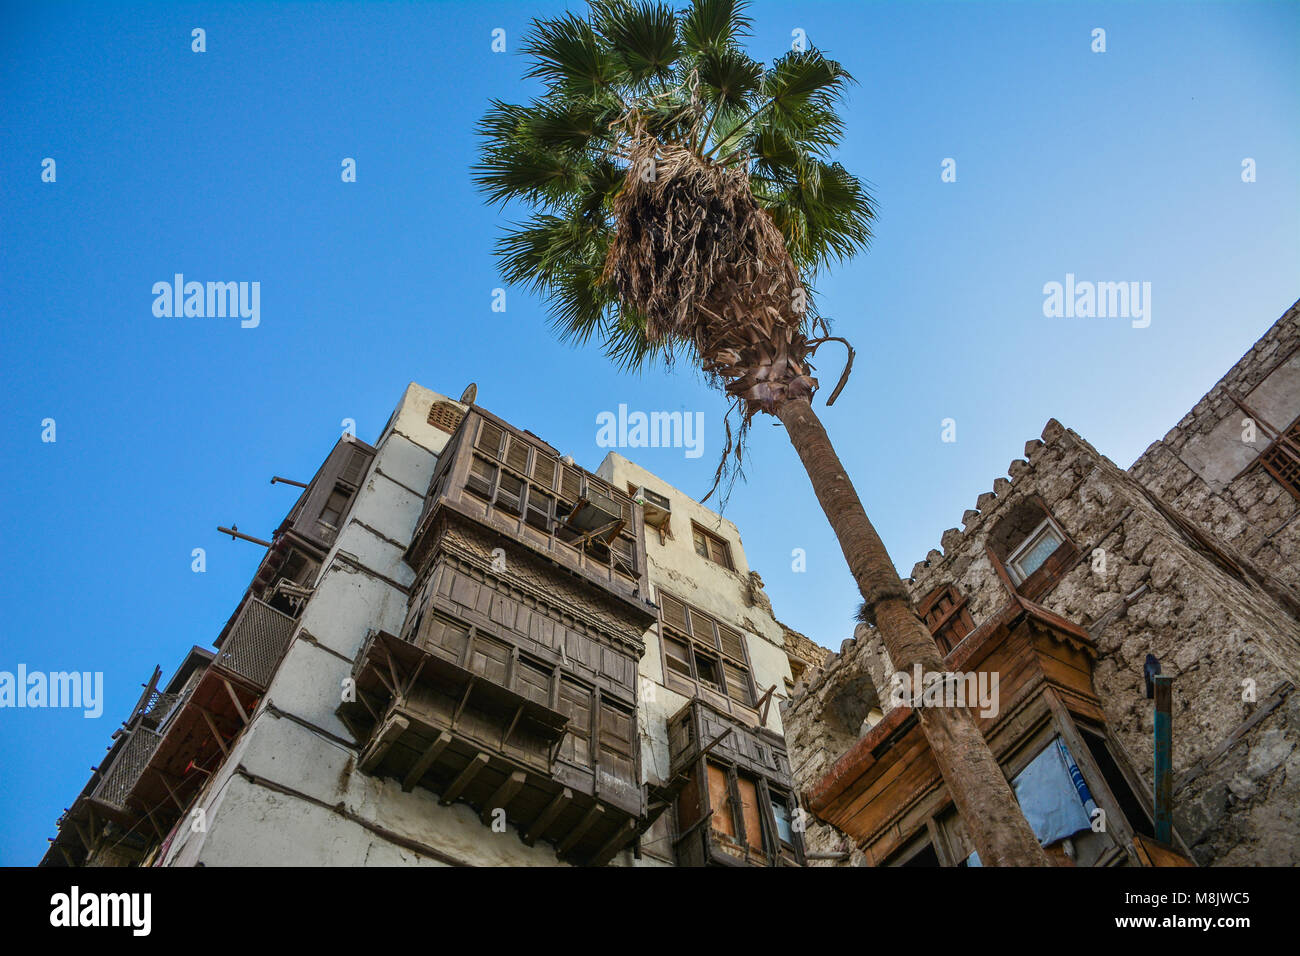 Old building in historical village Jeddah, Saudi arabia Stock Photo